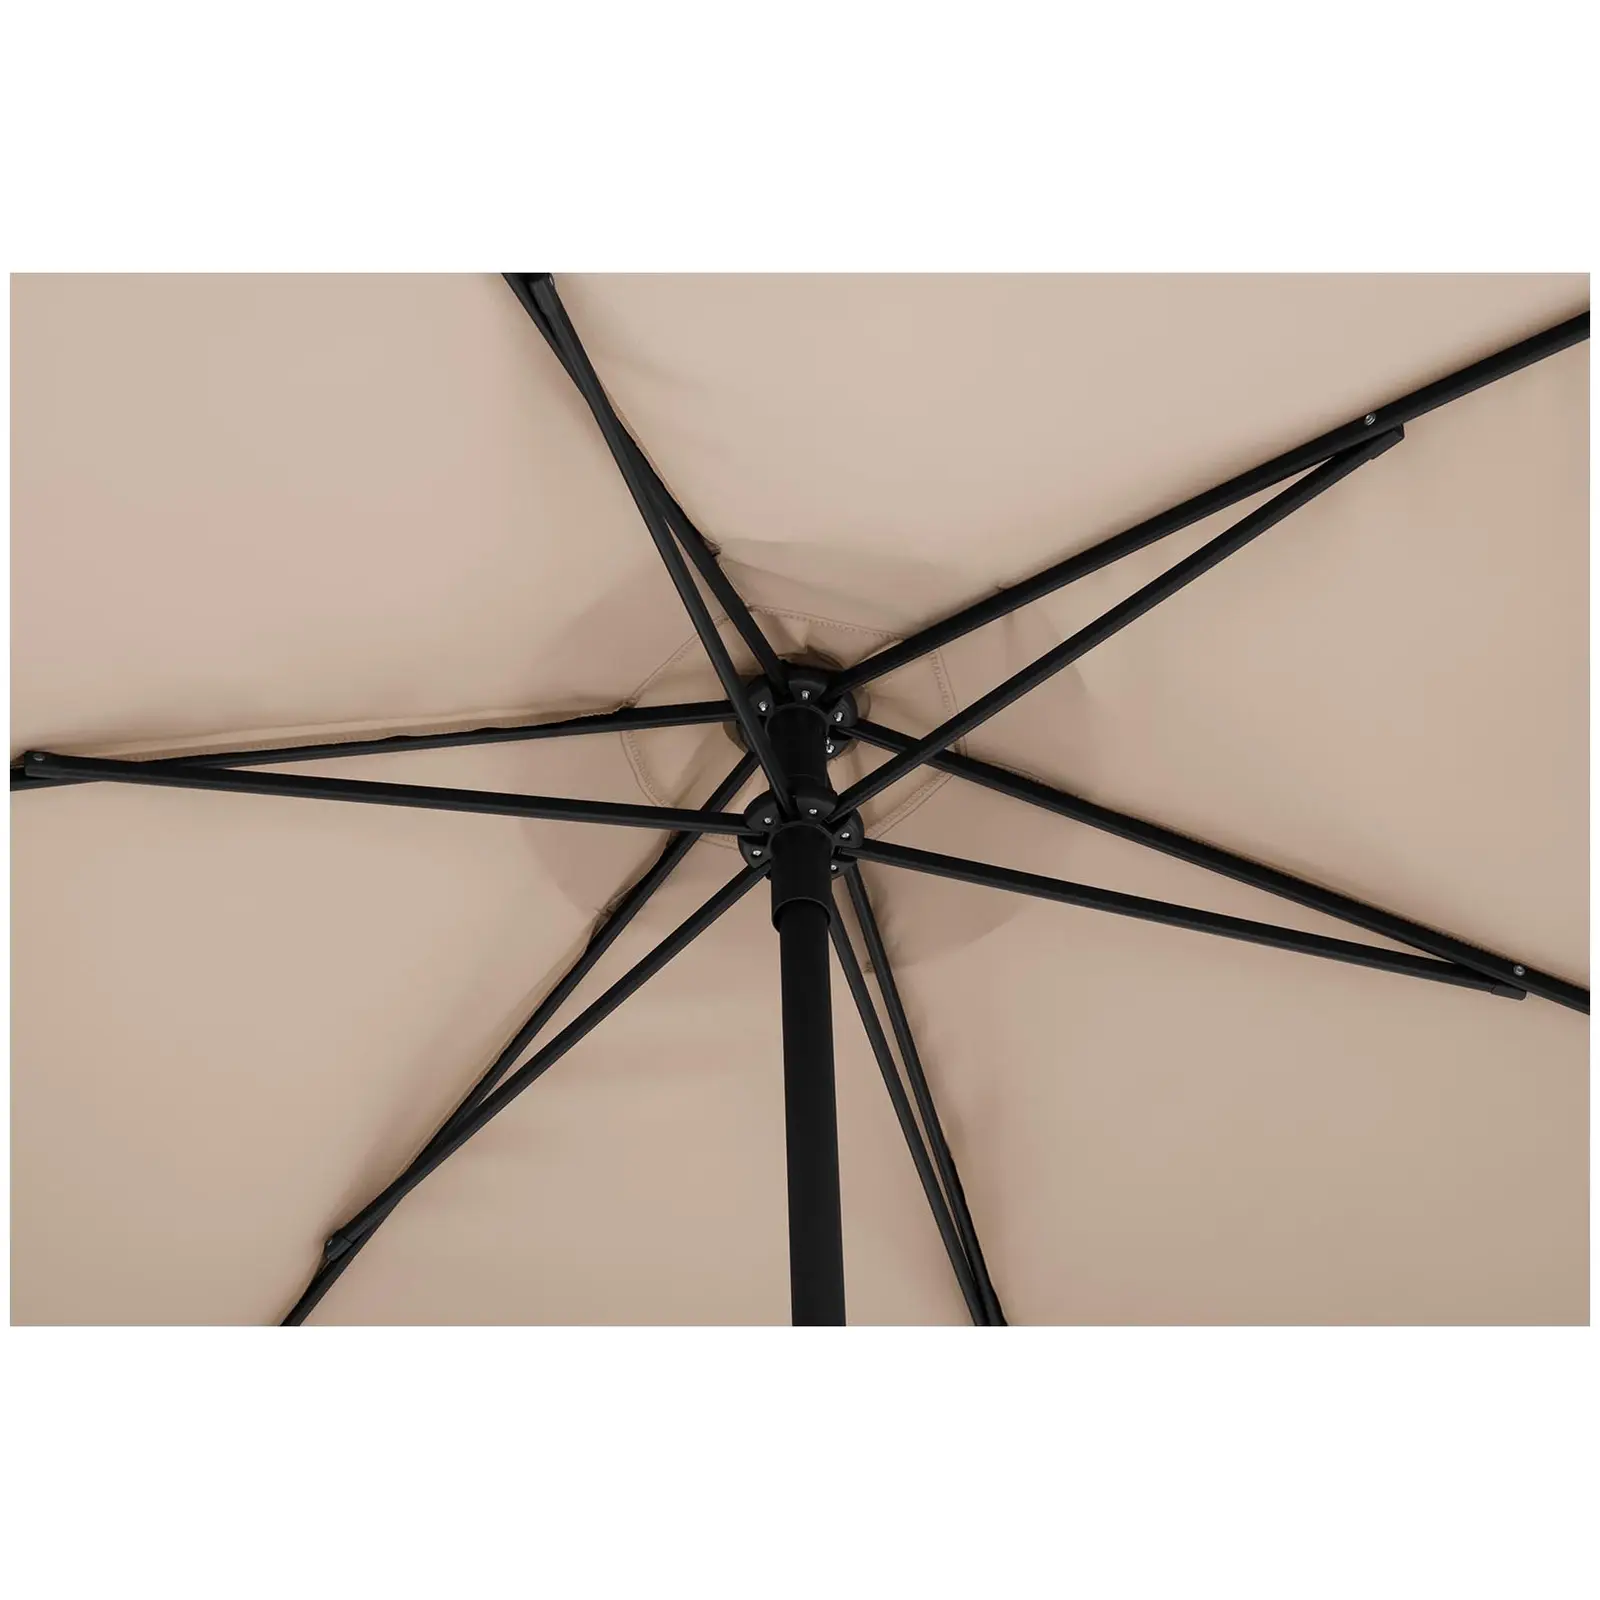 Sombrilla grande - Color crema - Hexagonal - Ø 270 cm